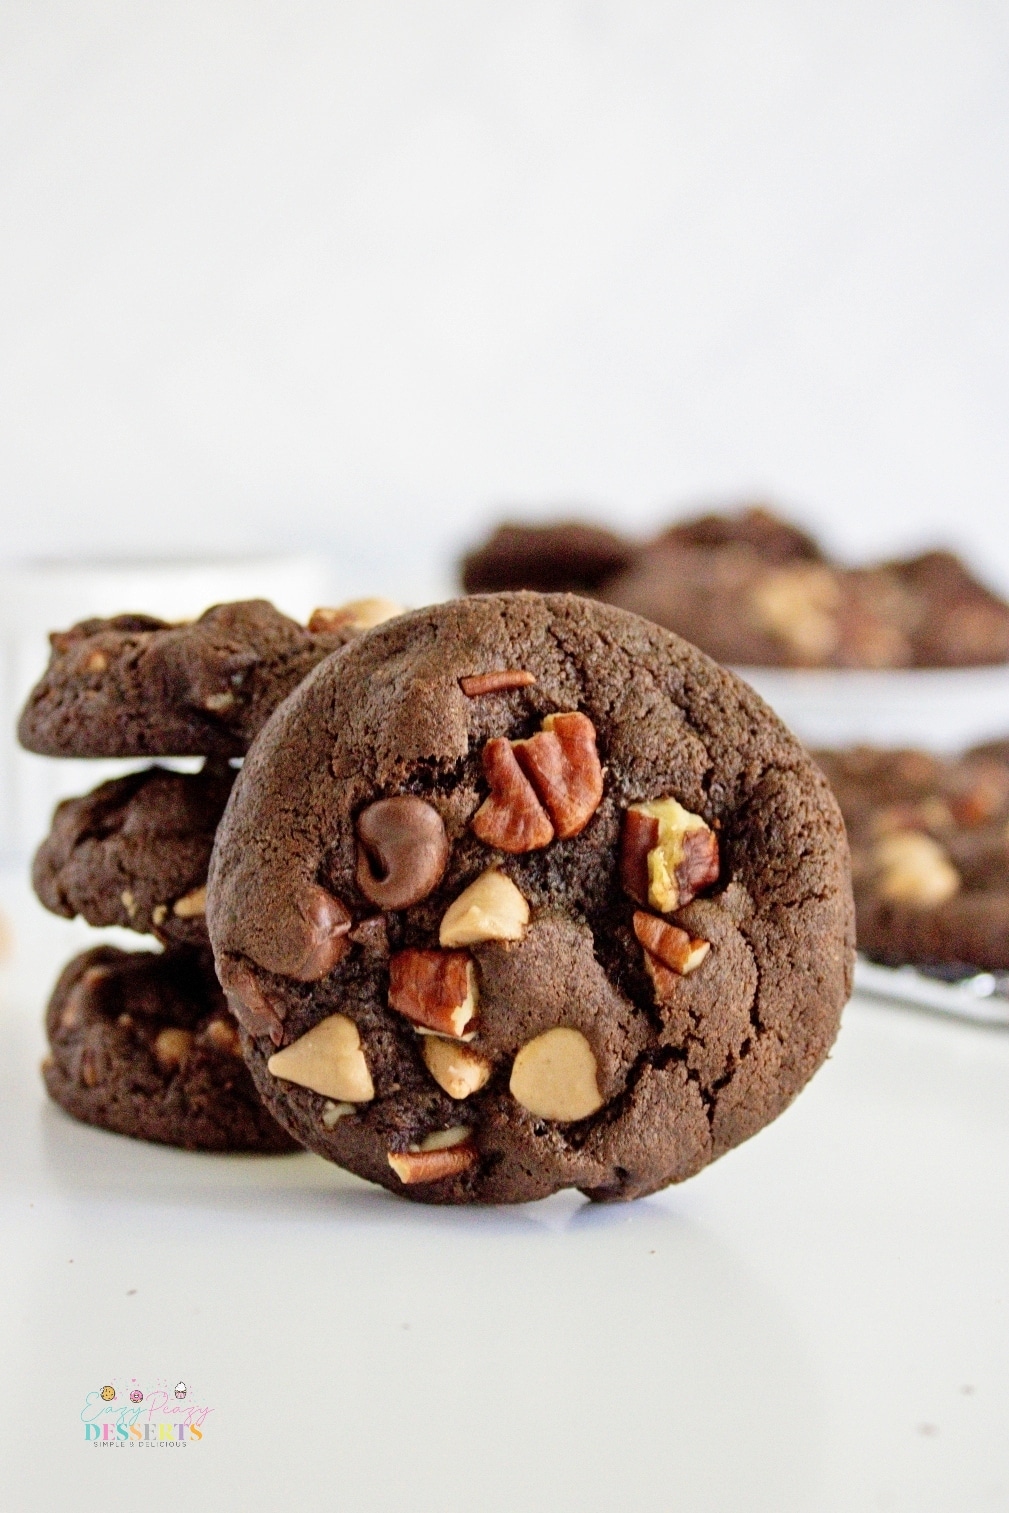 Chocolate pecan cookies